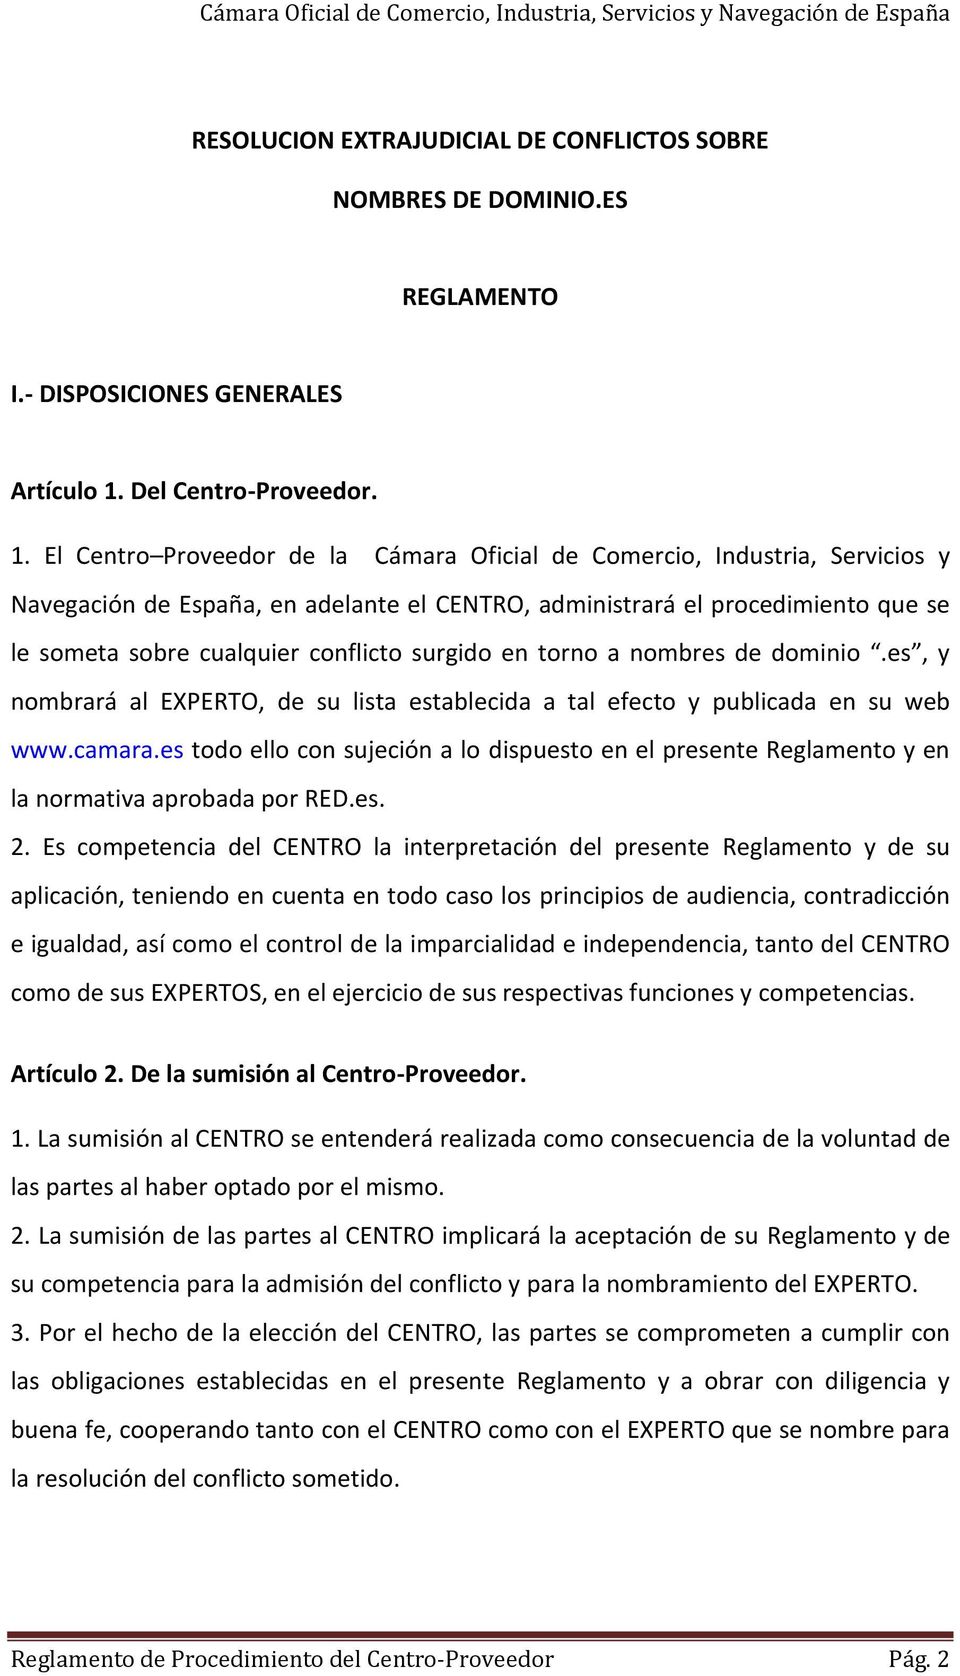 El Centro Proveedor de la Cámara Oficial de Comercio, Industria, Servicios y Navegación de España, en adelante el CENTRO, administrará el procedimiento que se le someta sobre cualquier conflicto